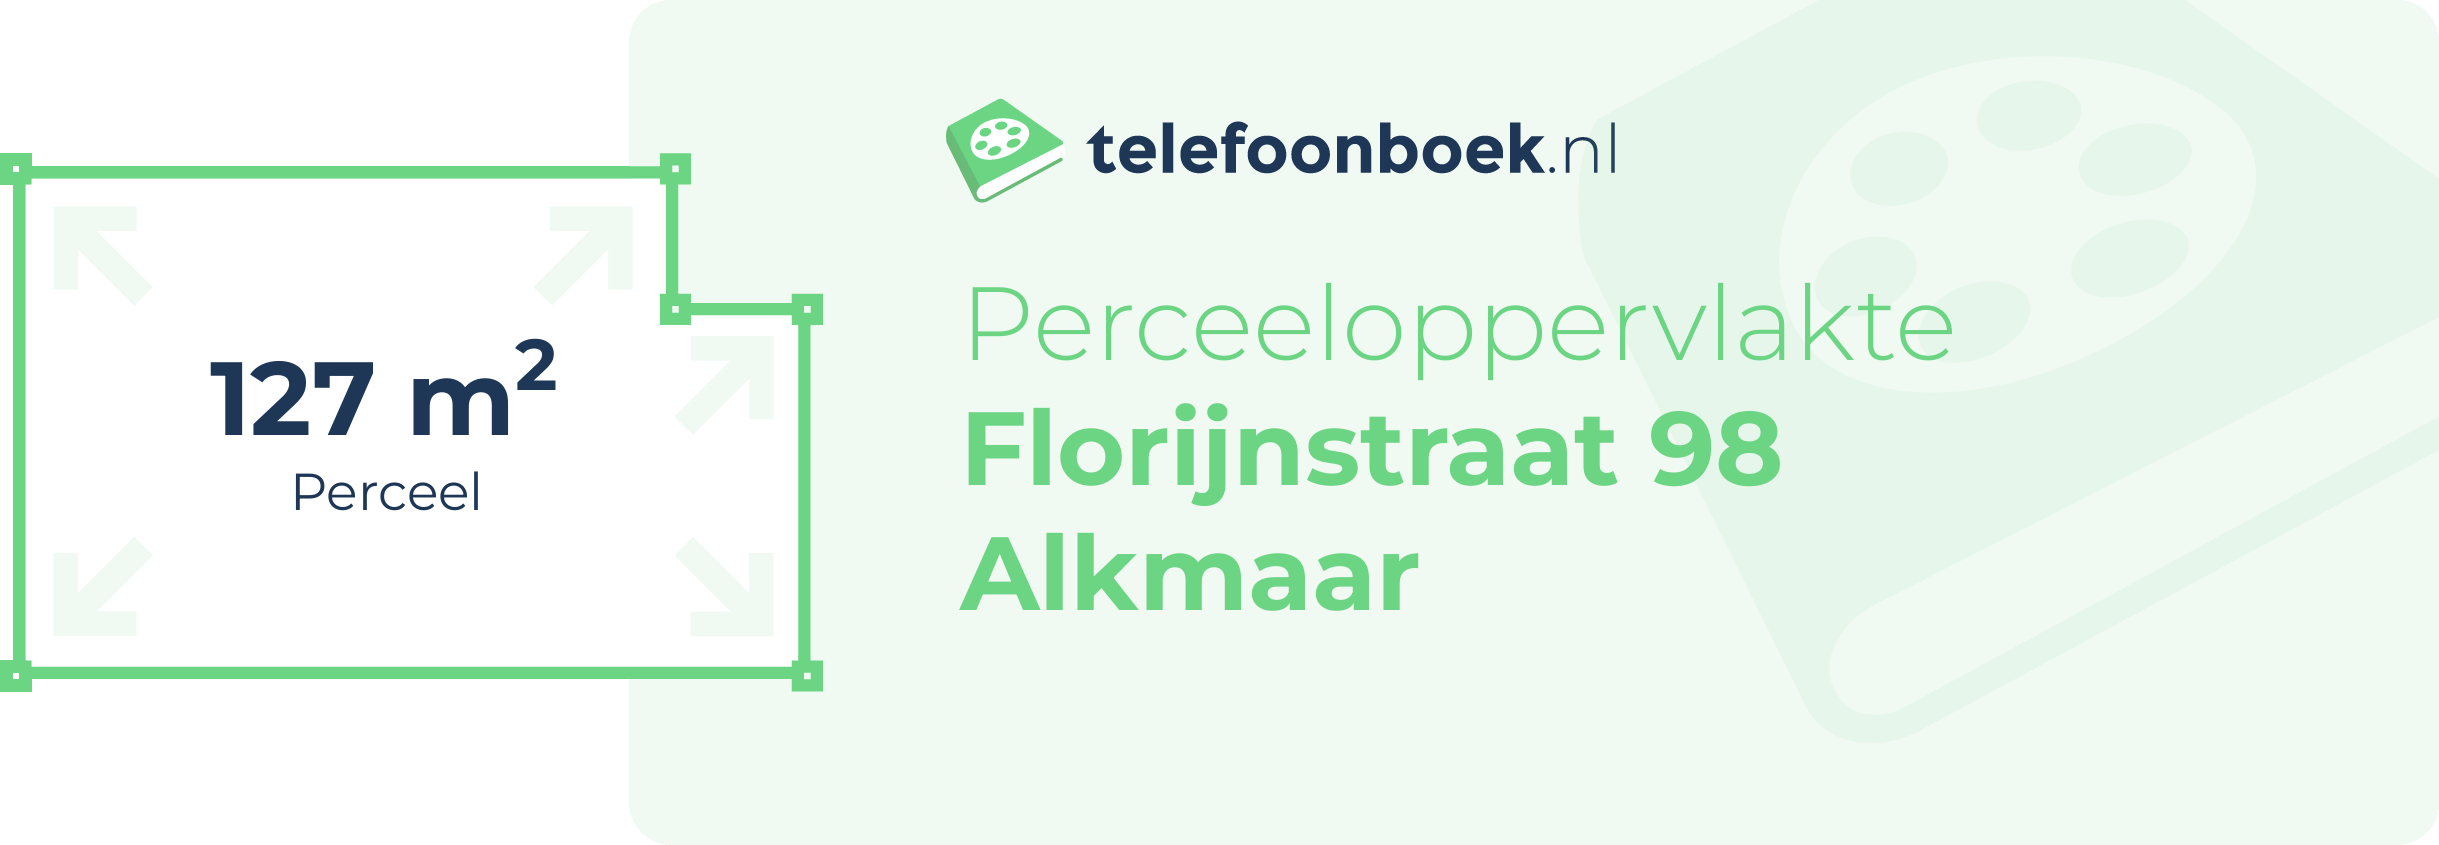 Perceeloppervlakte Florijnstraat 98 Alkmaar